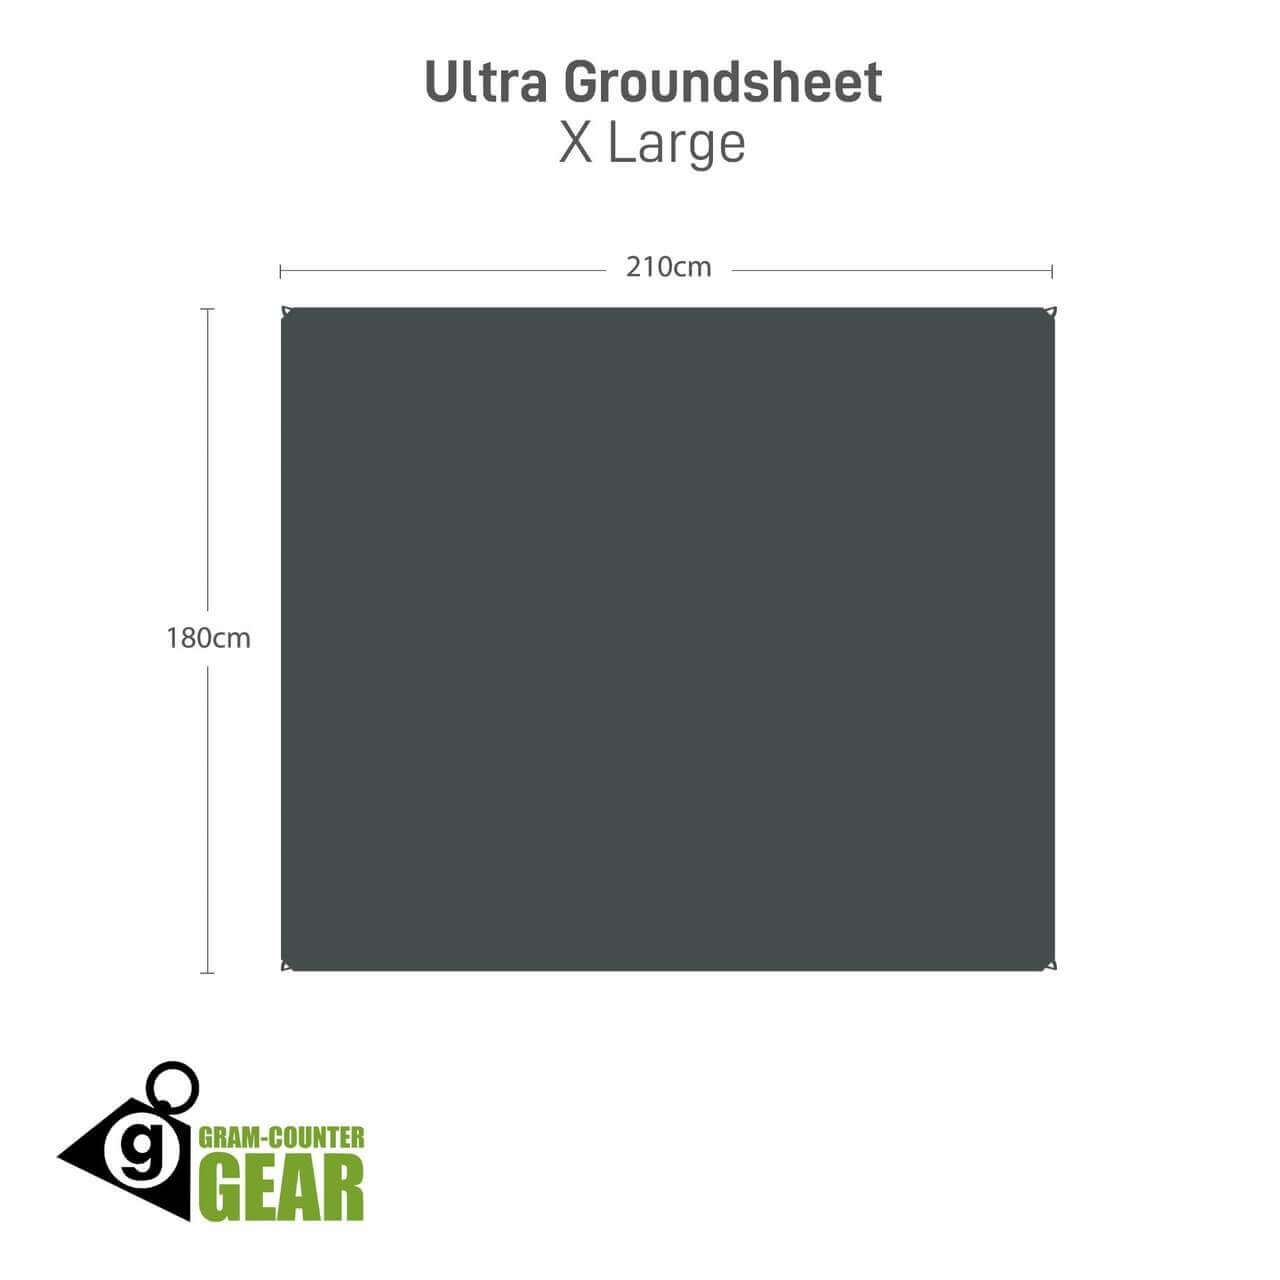 Gram-Counter Gear Ultra Groundsheet small - 70 x 210 cm